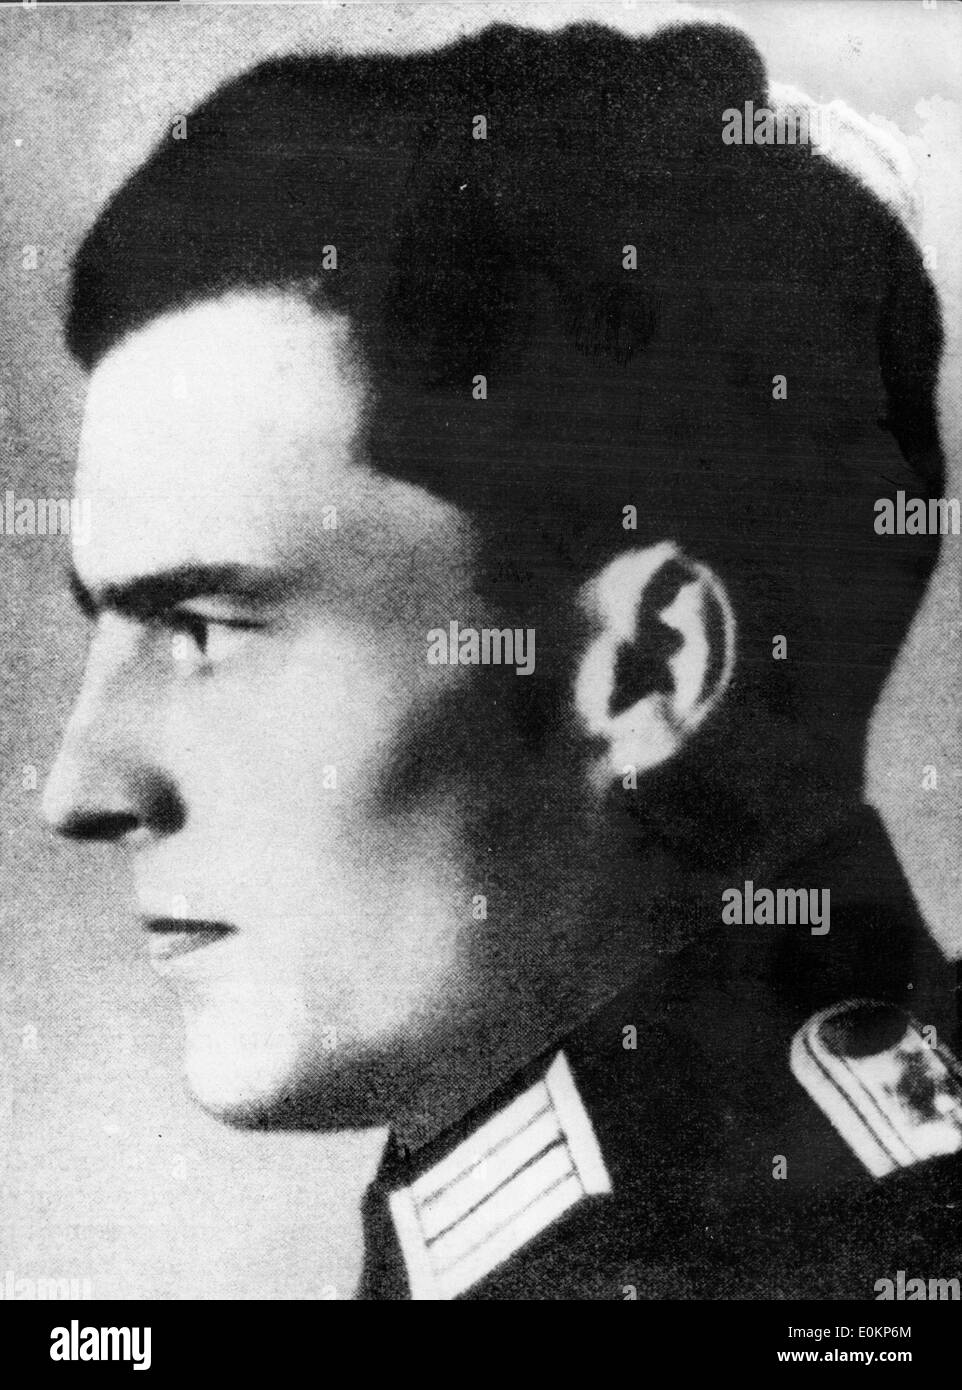 Diciembre 01, 1942 - Munich, Alemania - Foto de archivo: circa 1940. Un perfil retrato del líder nazi Claus Schenk Graf von Stauffenberg. Foto de stock